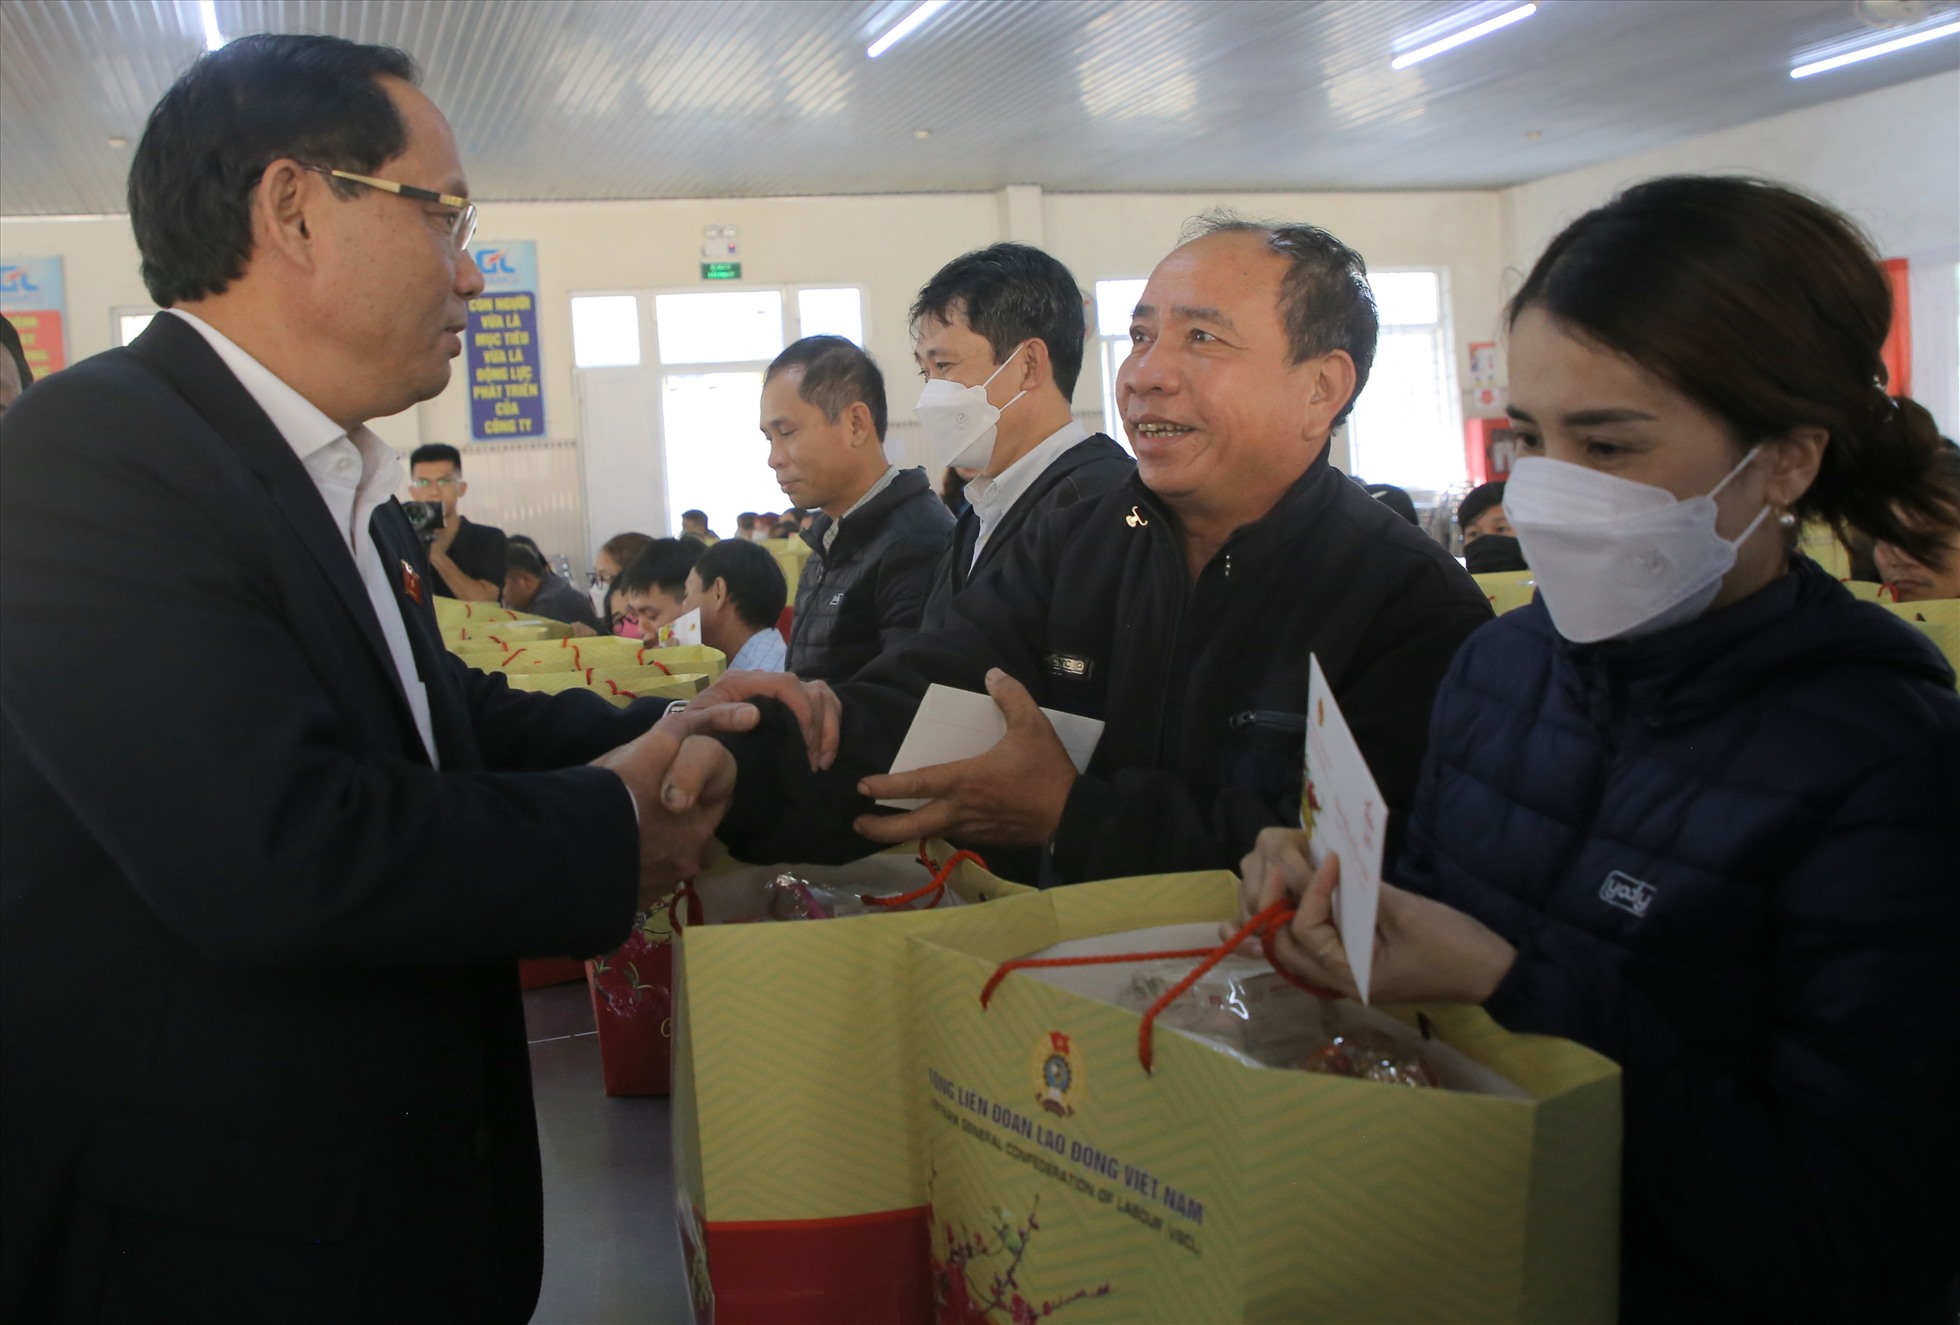 Nhận được phần quà từ tay Thượng tướng Trần Quang Phương, Ủy viên Ban chấp hành Trung ương Đảng, Phó Chủ tịch Quốc hội, người lao động nở nụ cười tươi.